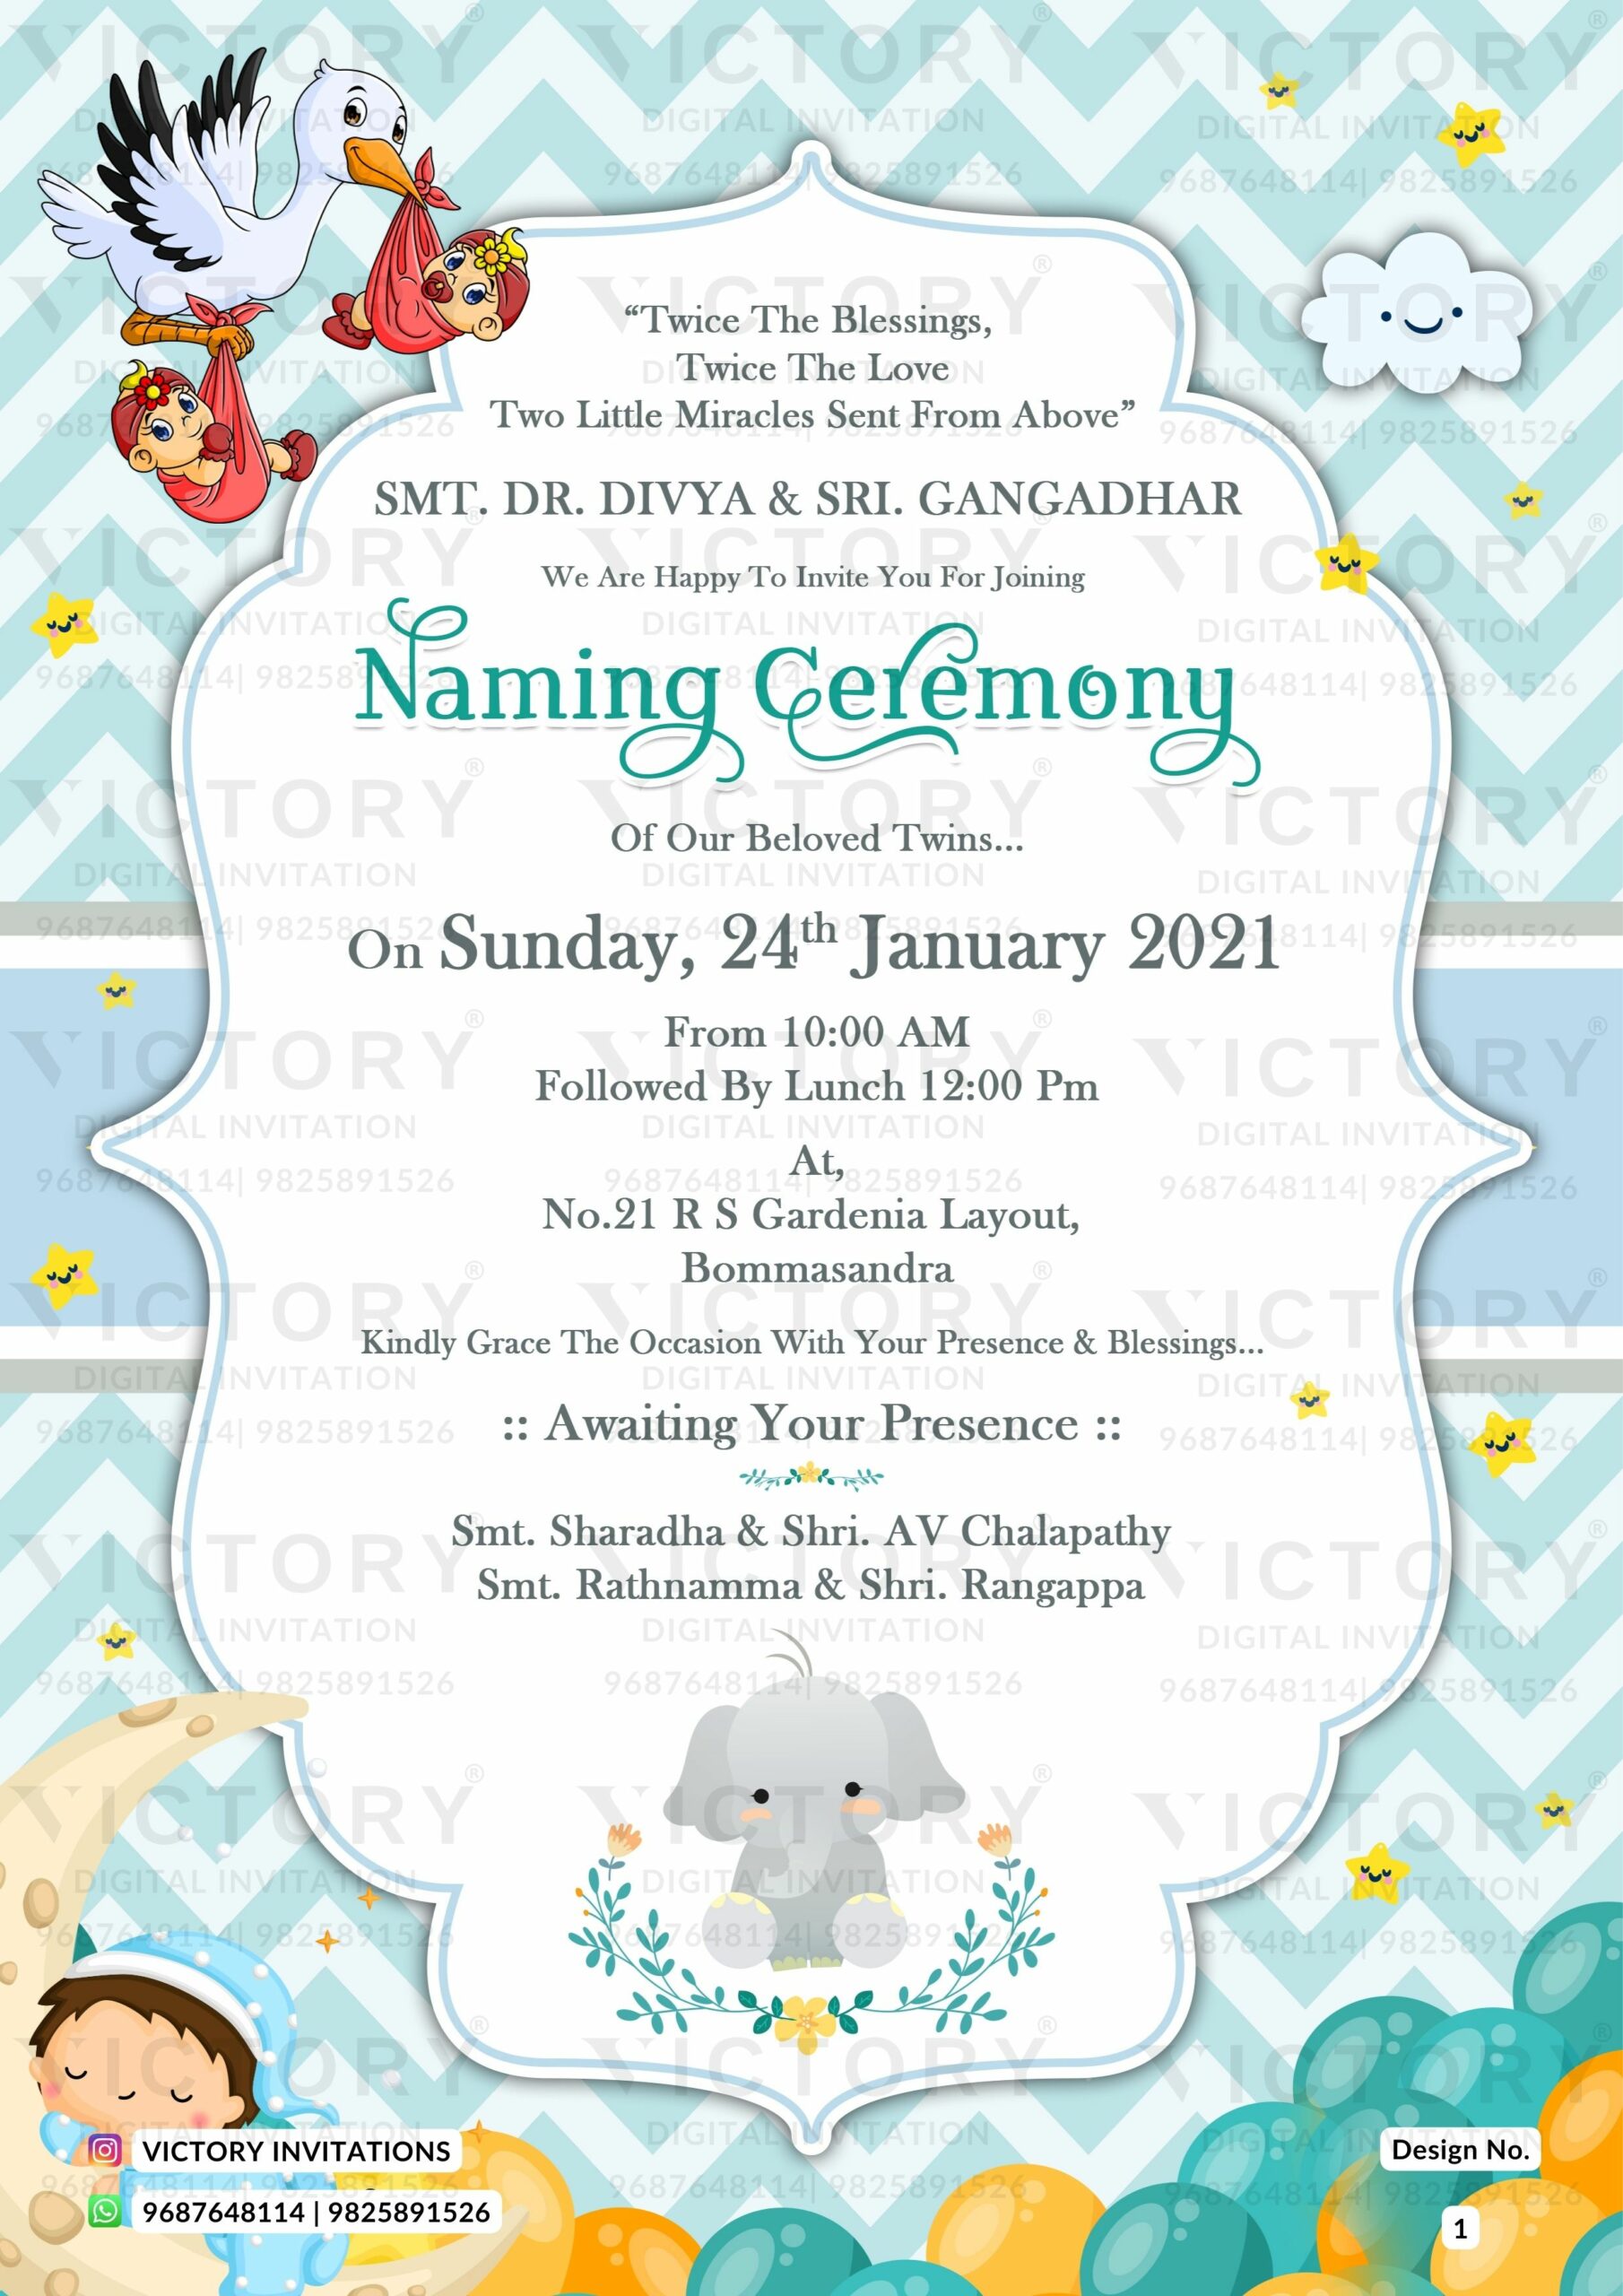 New Playful Elephant Blue E-invite for Baby Naming Ceremony, design no. 1 -  